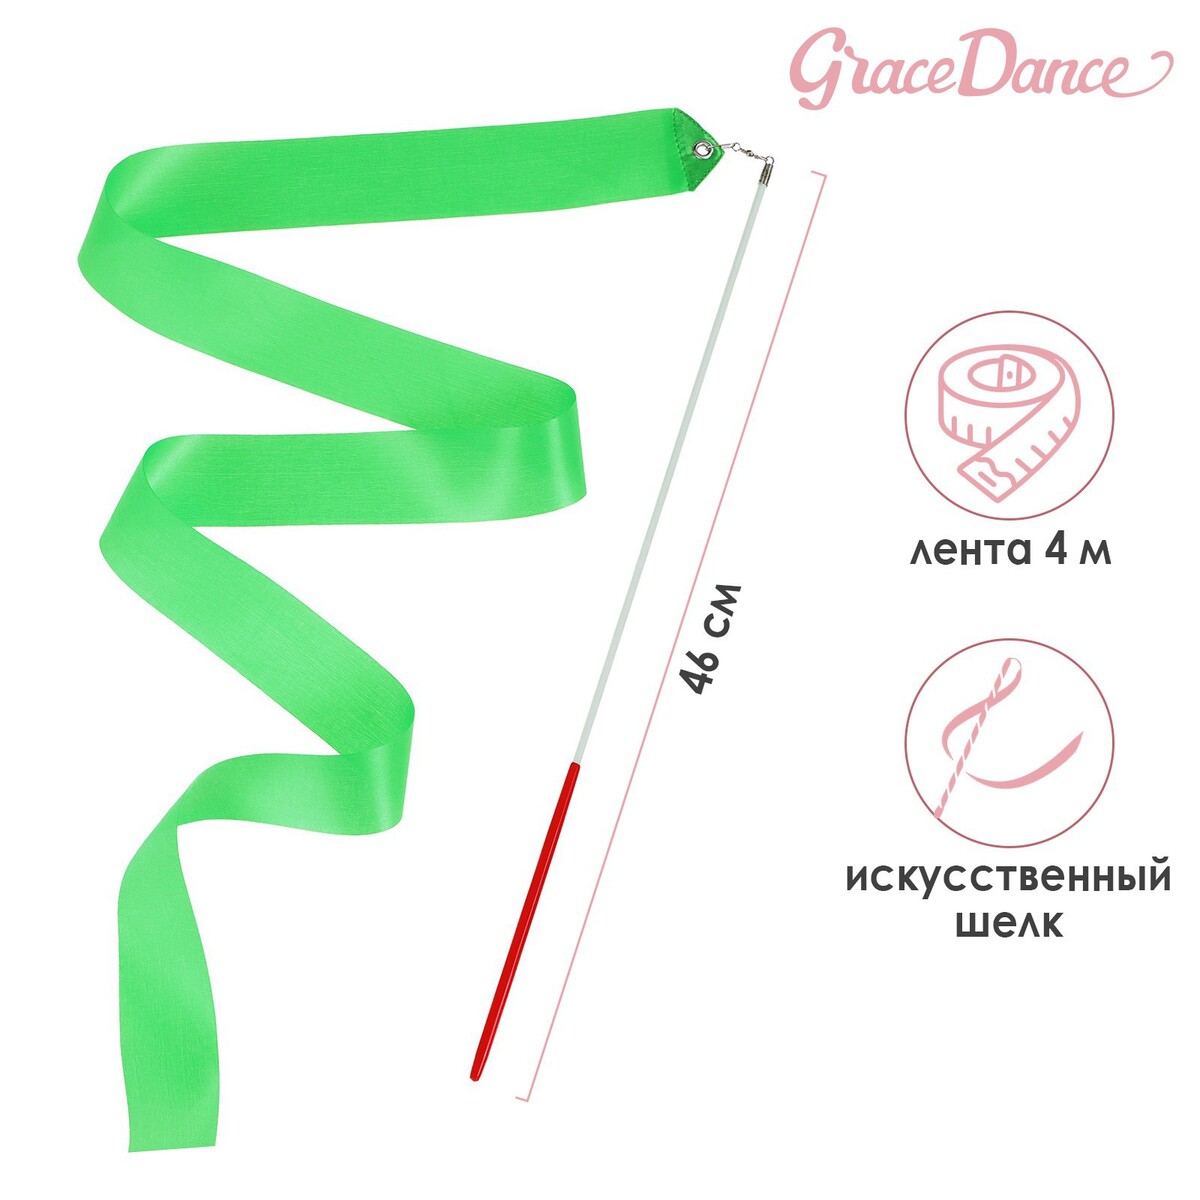 Лента для художественной гимнастики с палочкой grace dance, 4 м, цвет зеленый лента гимнастическая sportex l6м с палочкой l56см b25984 6 зеленый